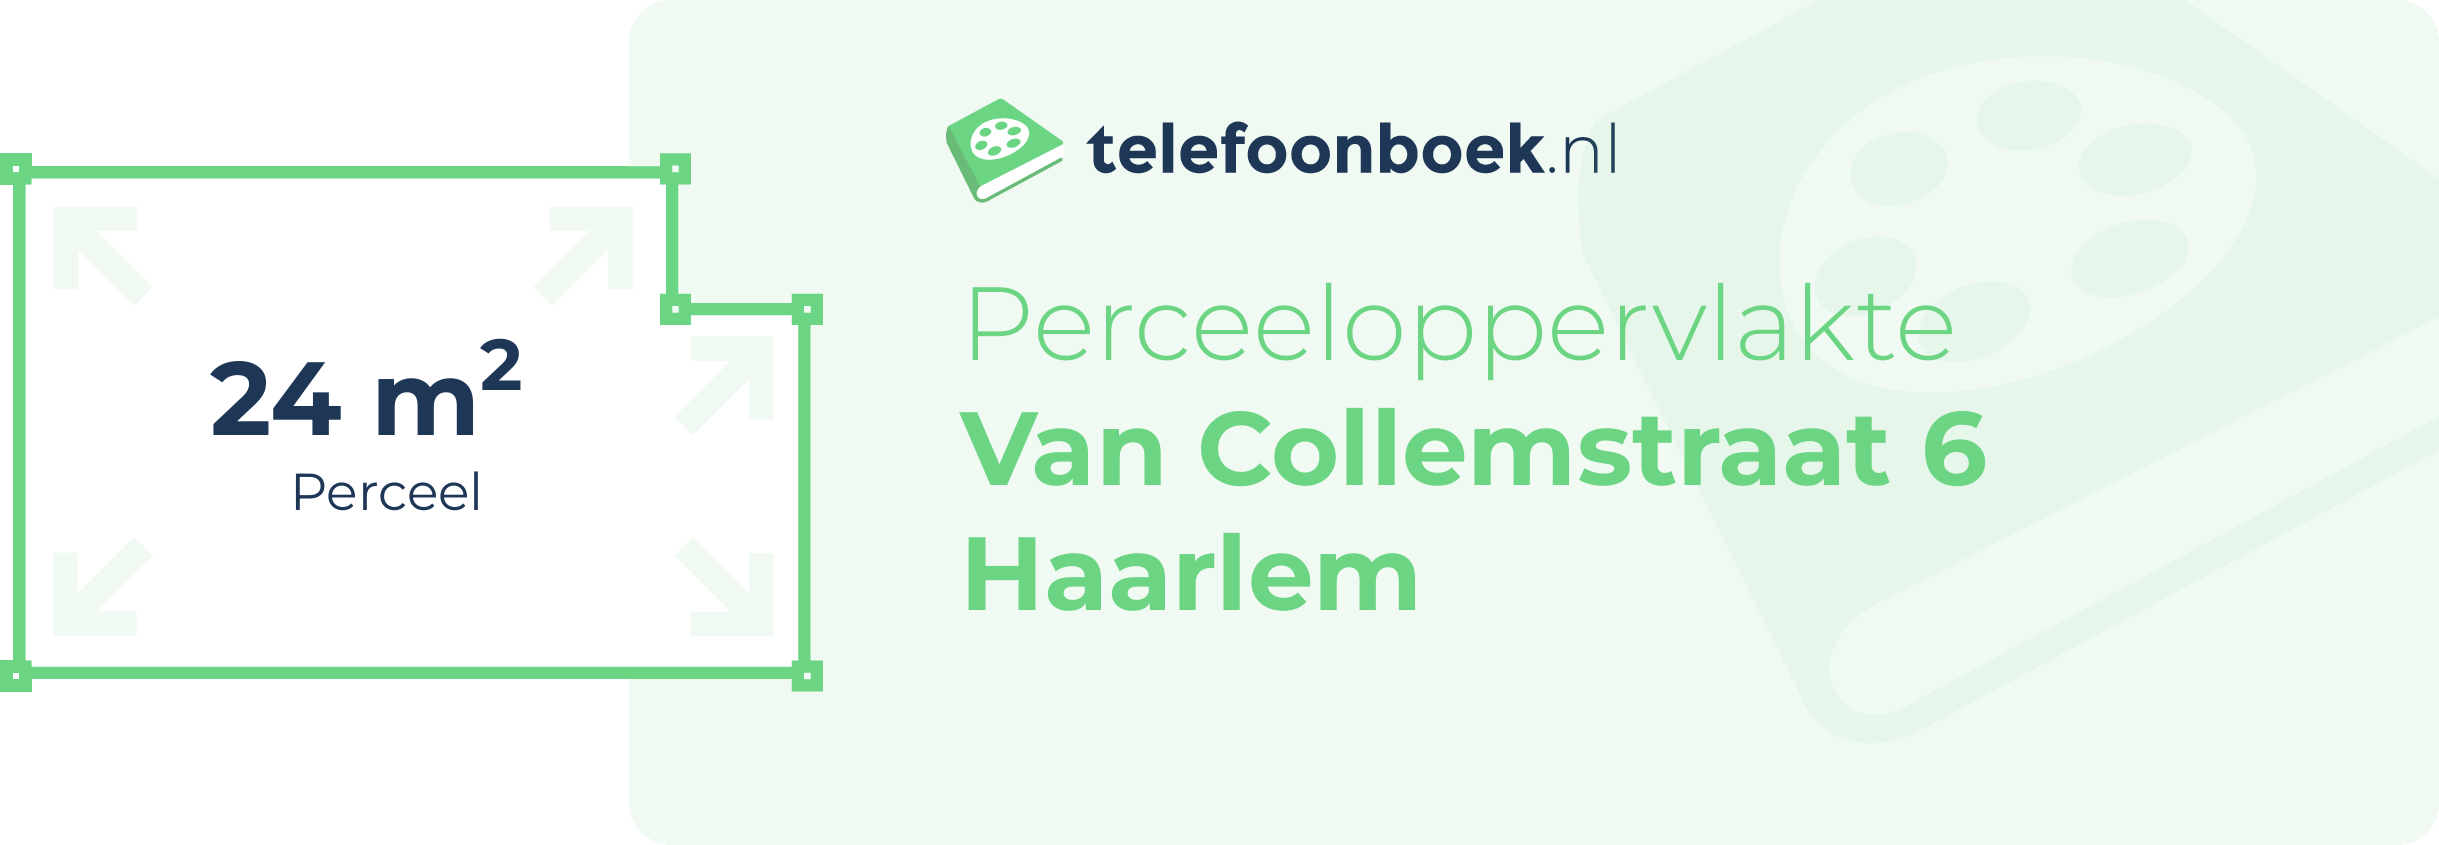 Perceeloppervlakte Van Collemstraat 6 Haarlem